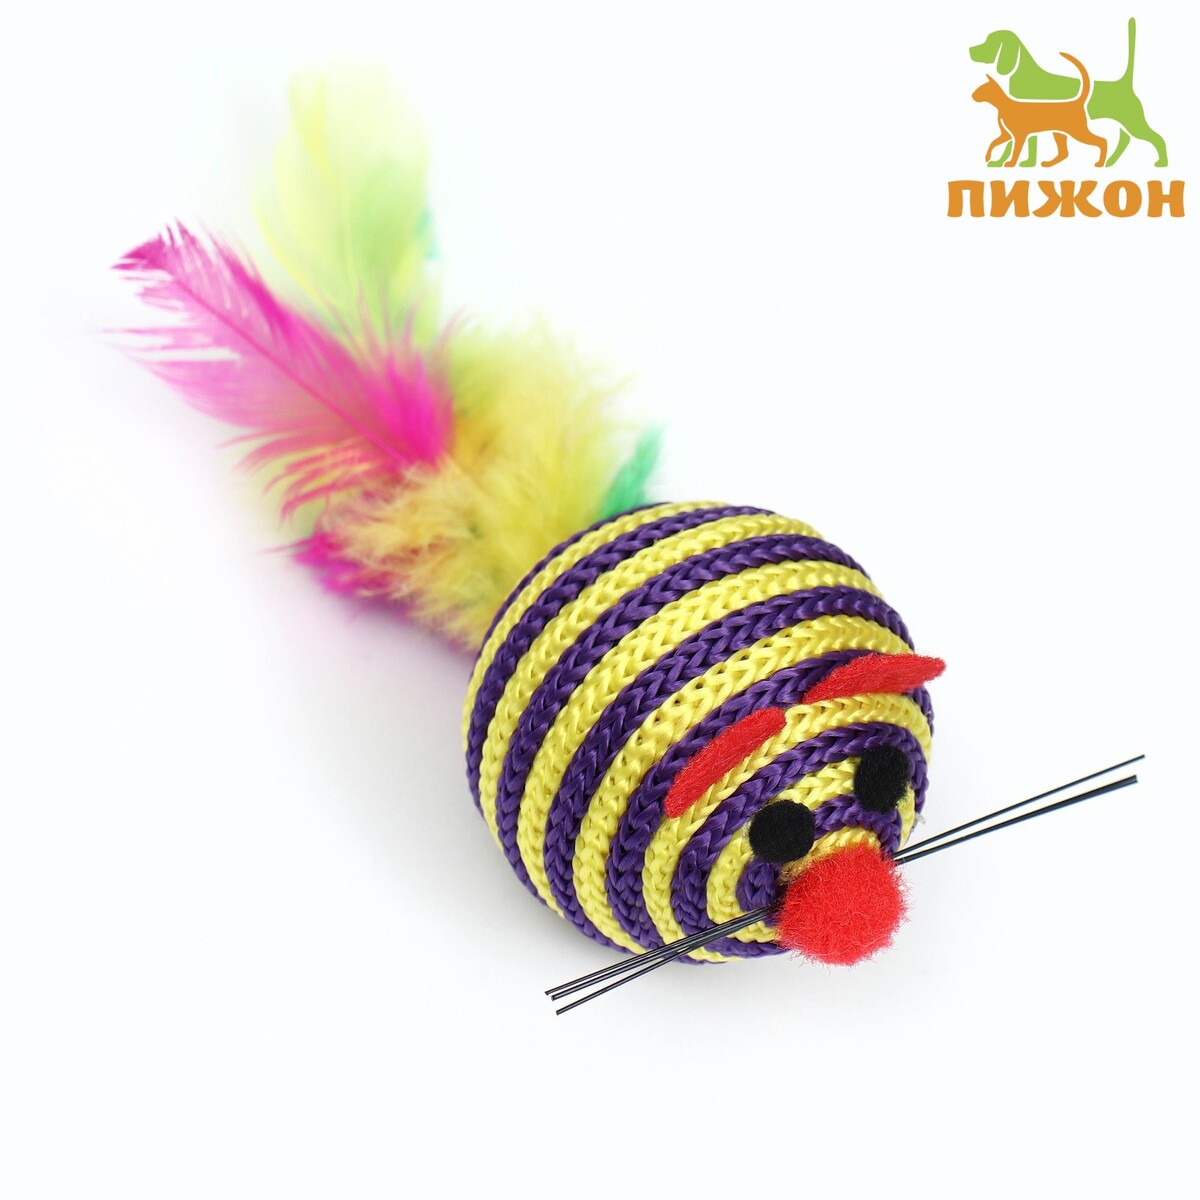 Шарик-мышь из текстиля с перьями, 4,2 см, фиолетовая мышь razer naga x rz01 03590100 r3m1